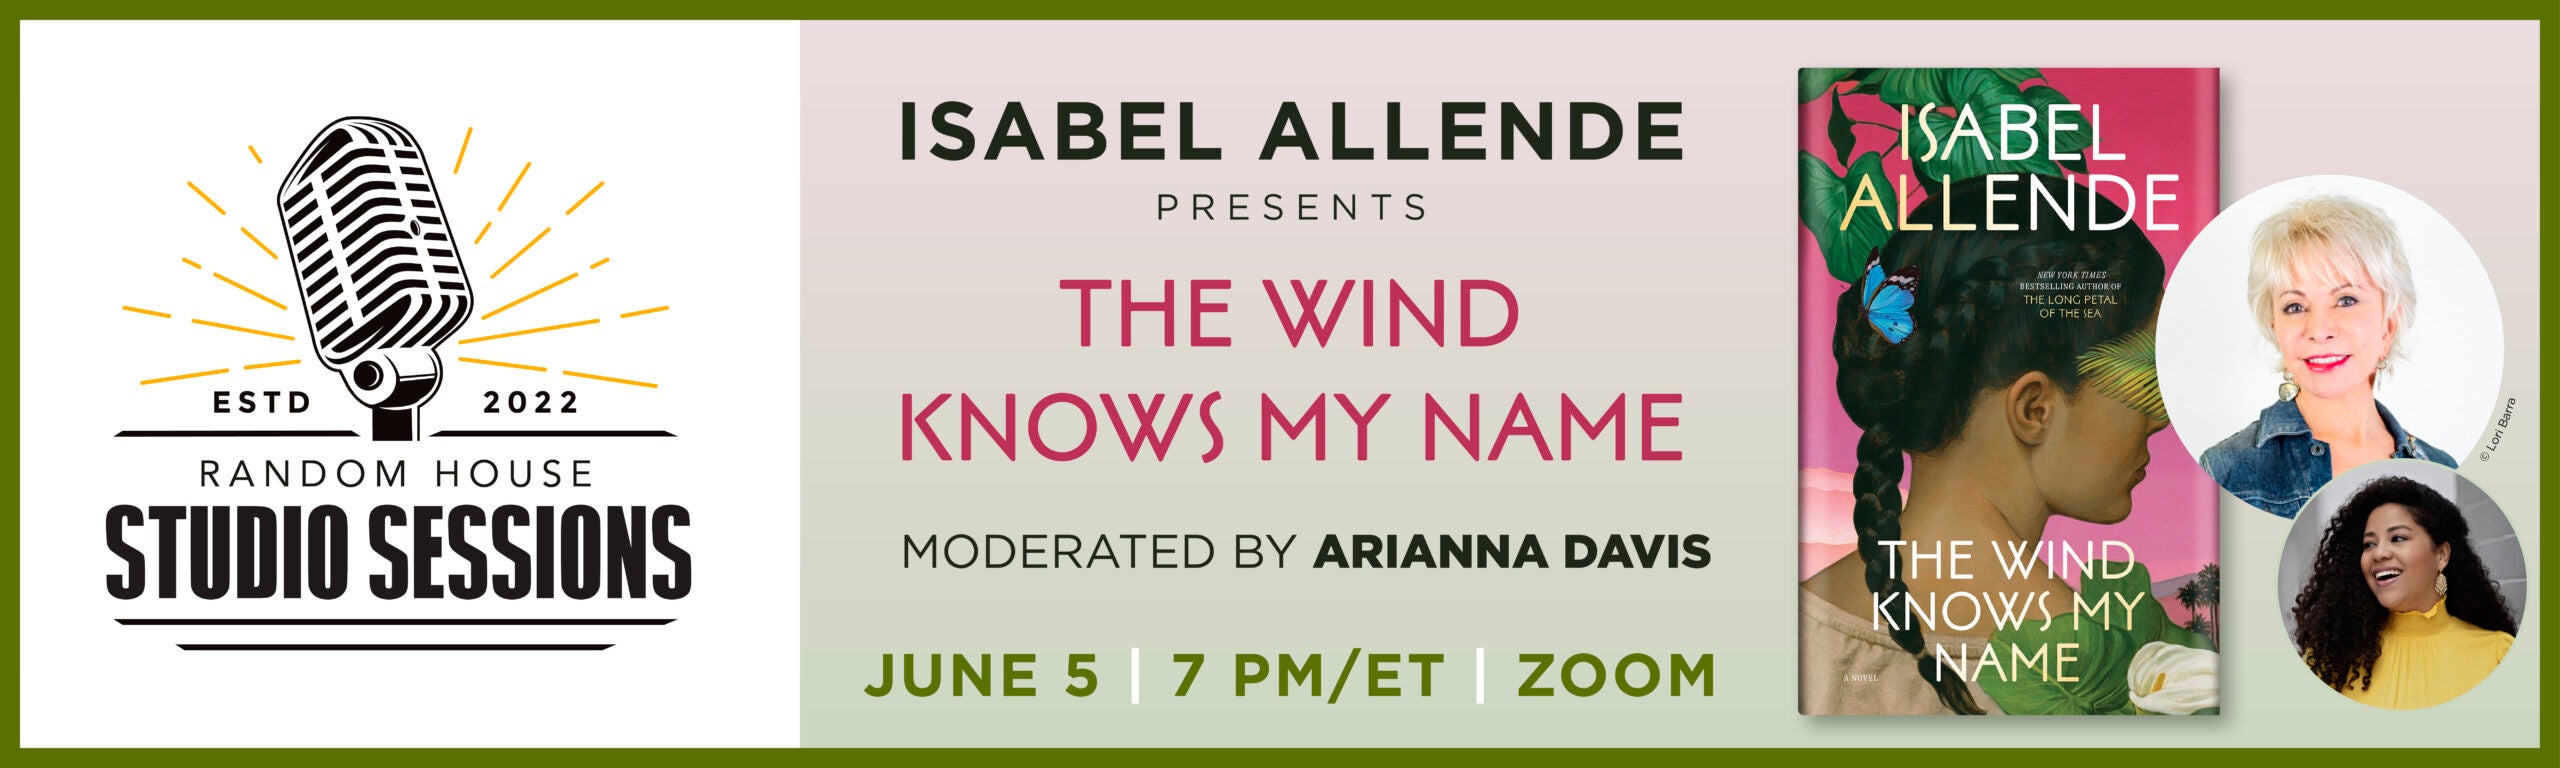 Random House Studio Sessions: Isabel Allende Presents <em>The Wind Knows My Name</em>